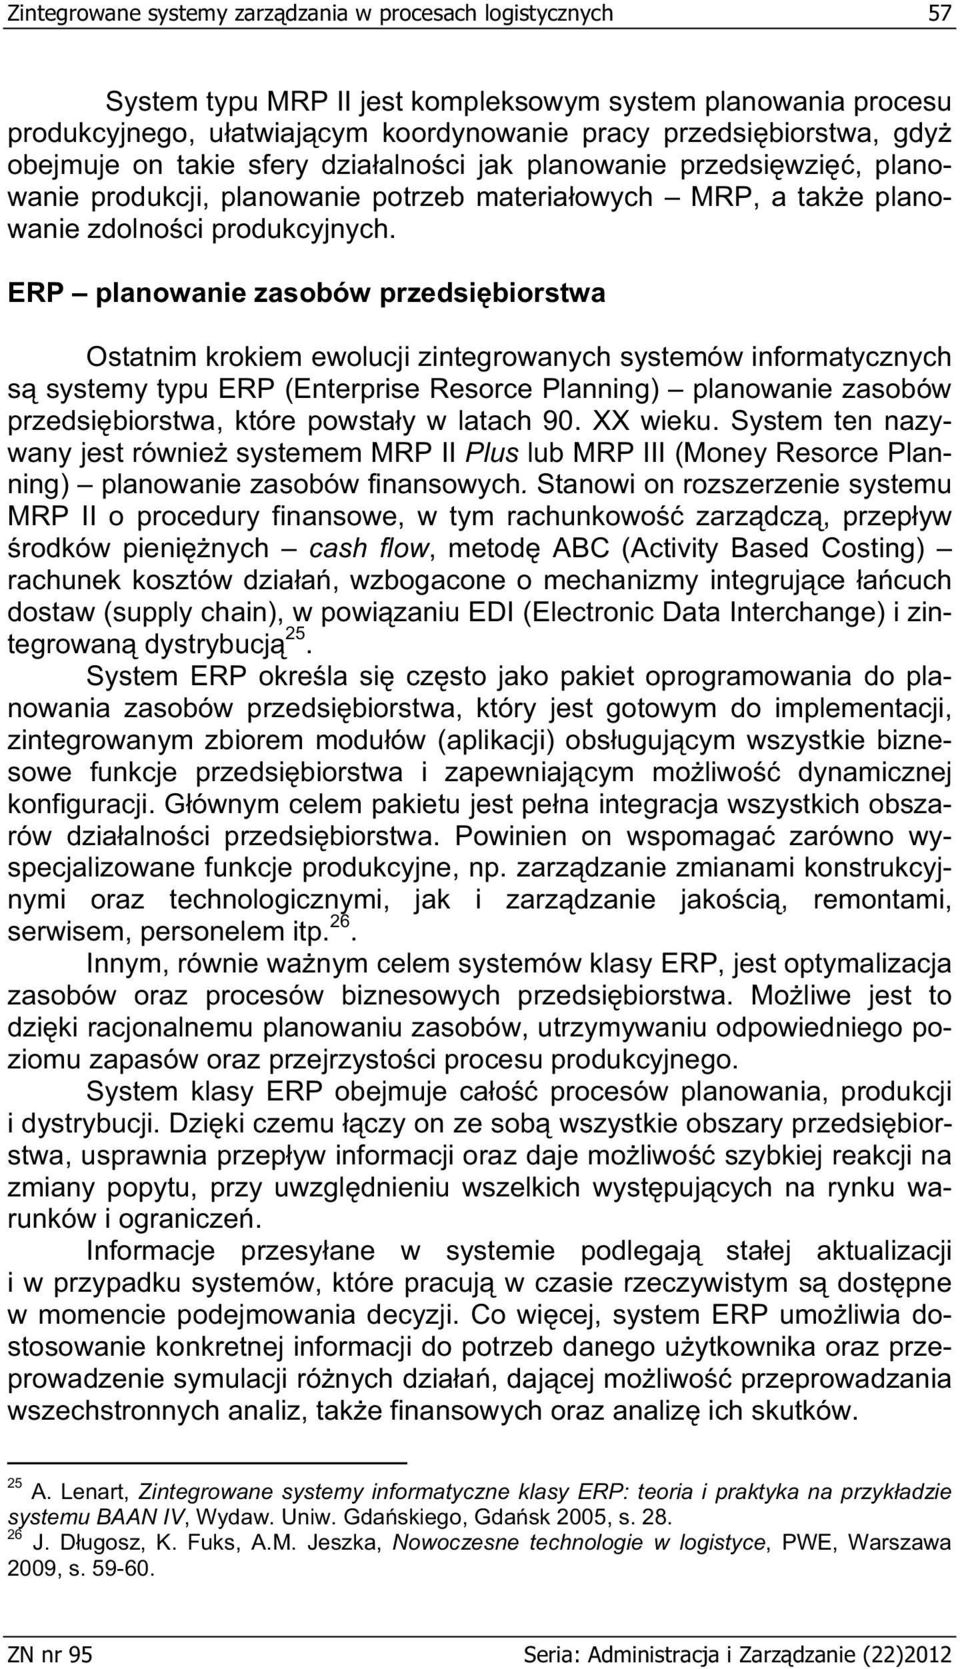 ERP planowanie zasobów przedsi biorstwa Ostatnim krokiem ewolucji zintegrowanych systemów informatycznych s systemy typu ERP (Enterprise Resorce Planning) planowanie zasobów przedsi biorstwa, które